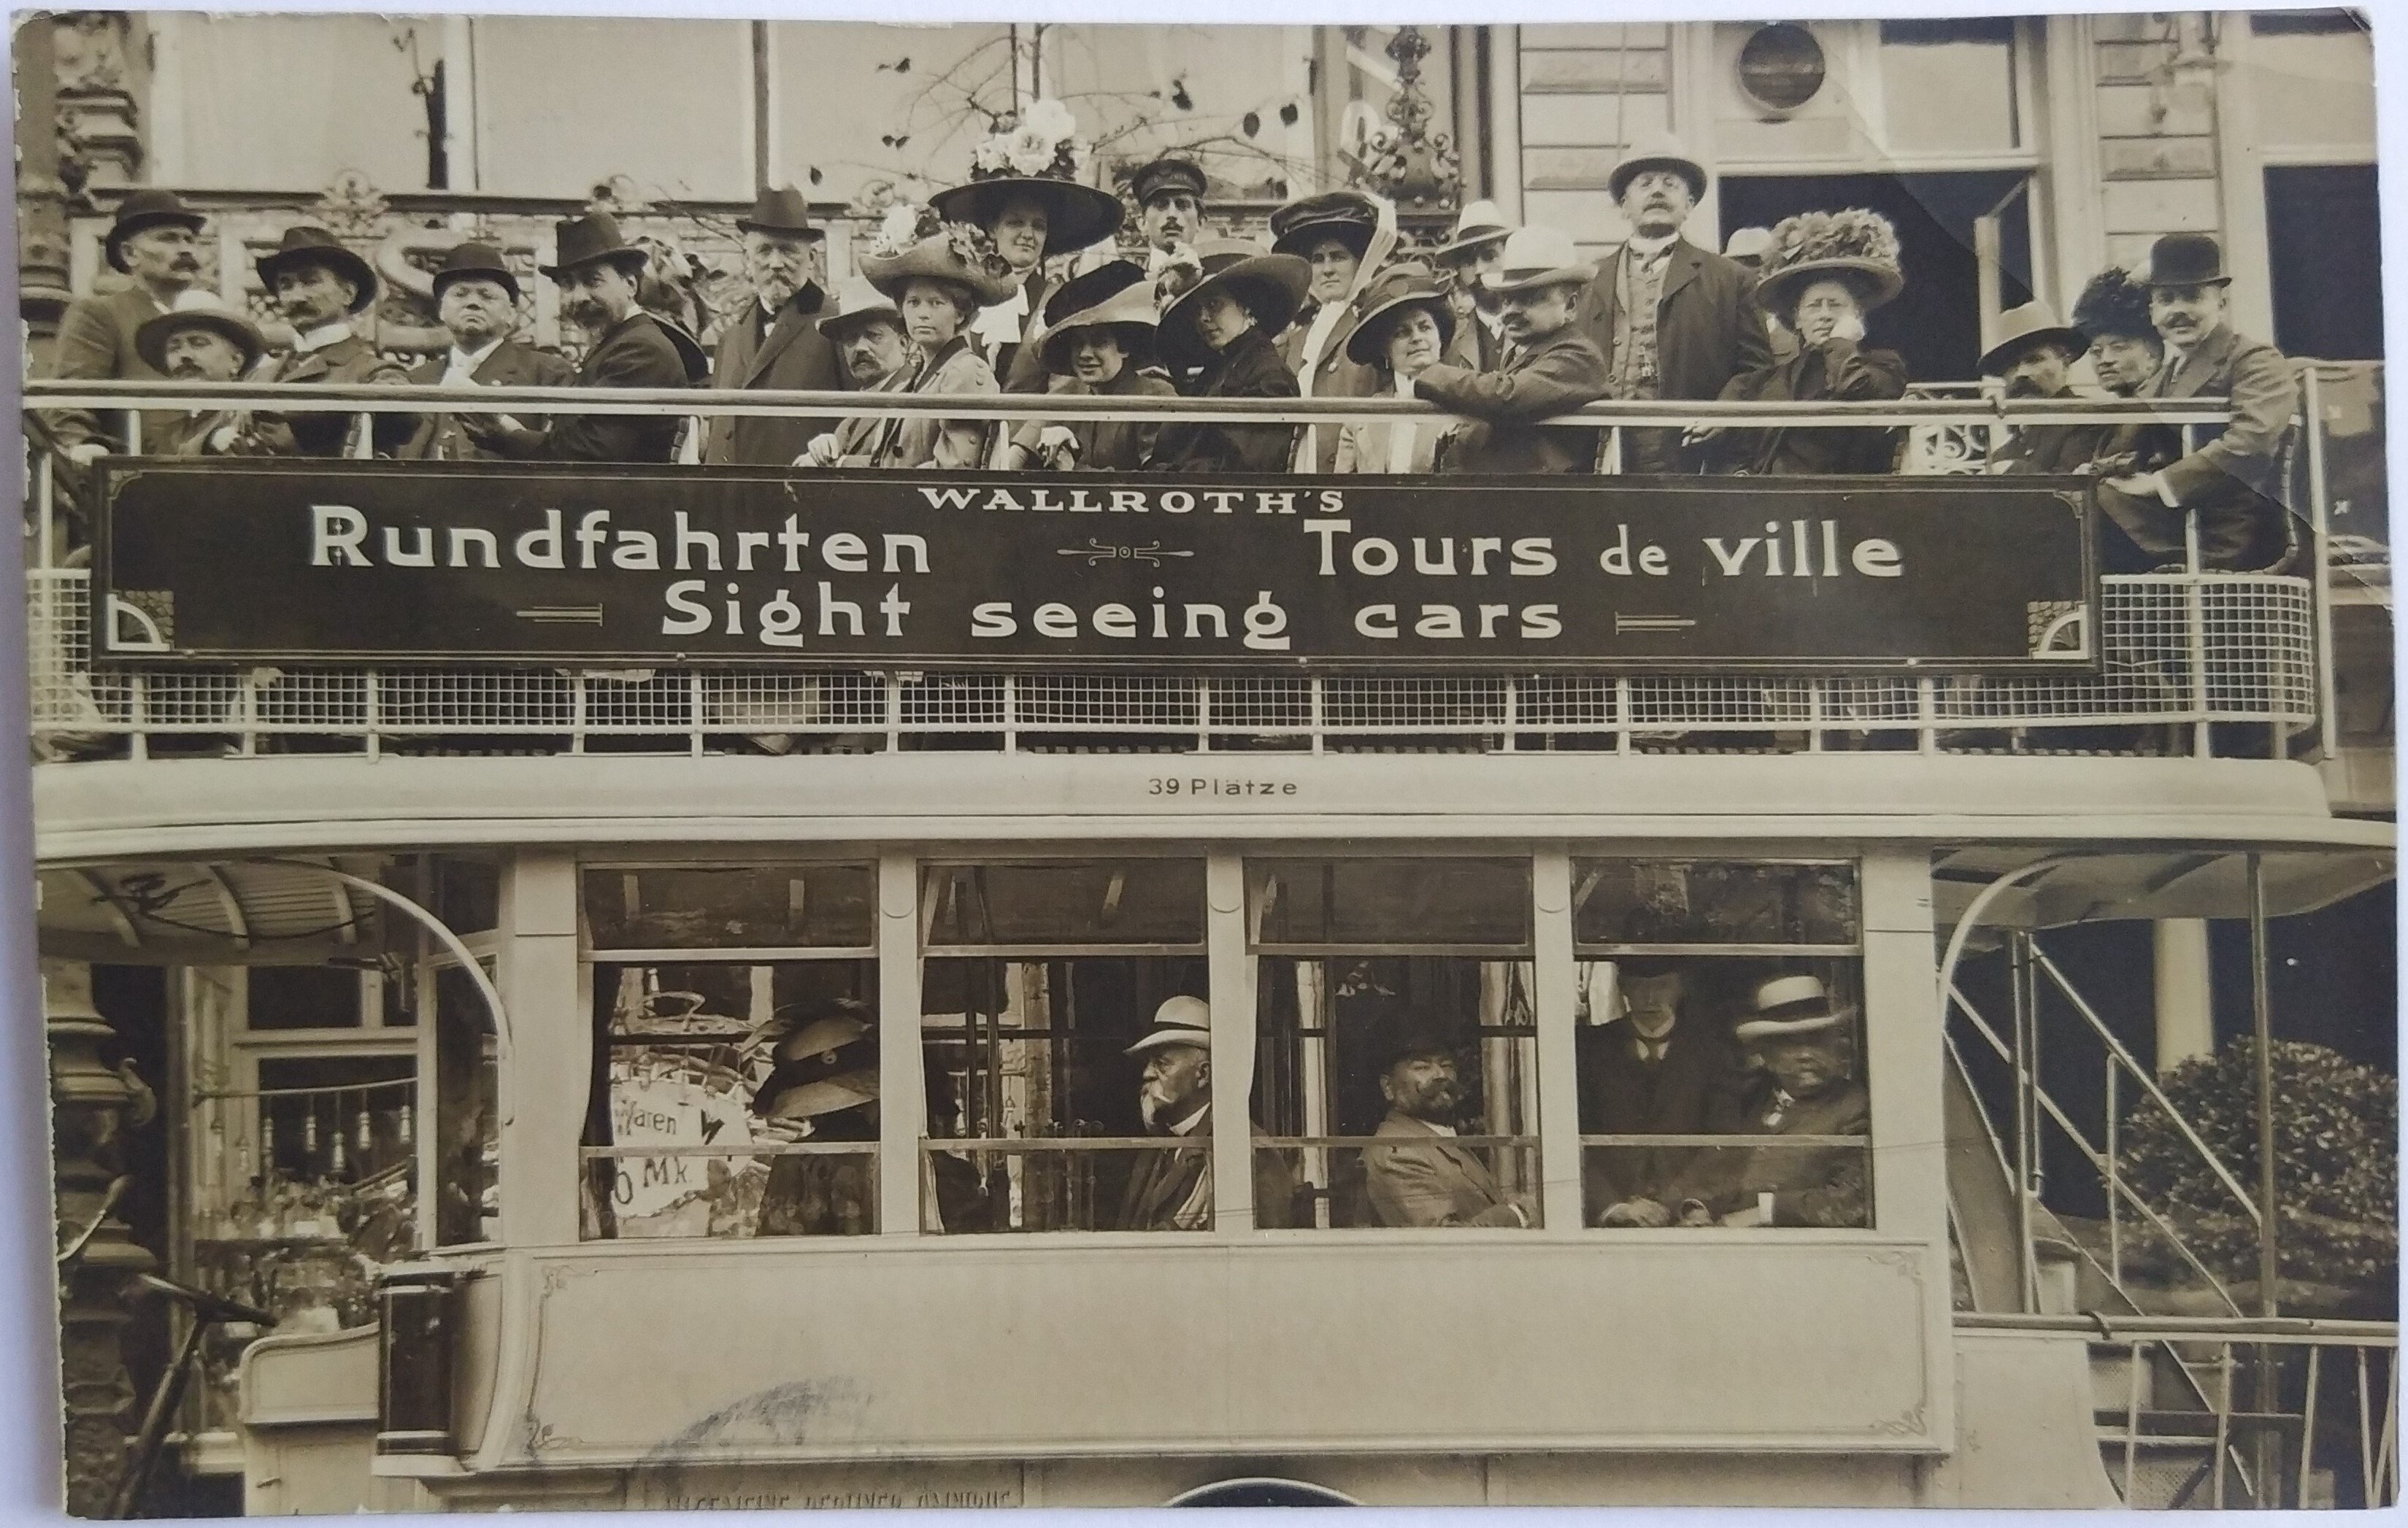 Berlin: Busrundfahrt für Touristen 1910 (Landesgeschichtliche Vereinigung für die Mark Brandenburg e.V. CC BY)